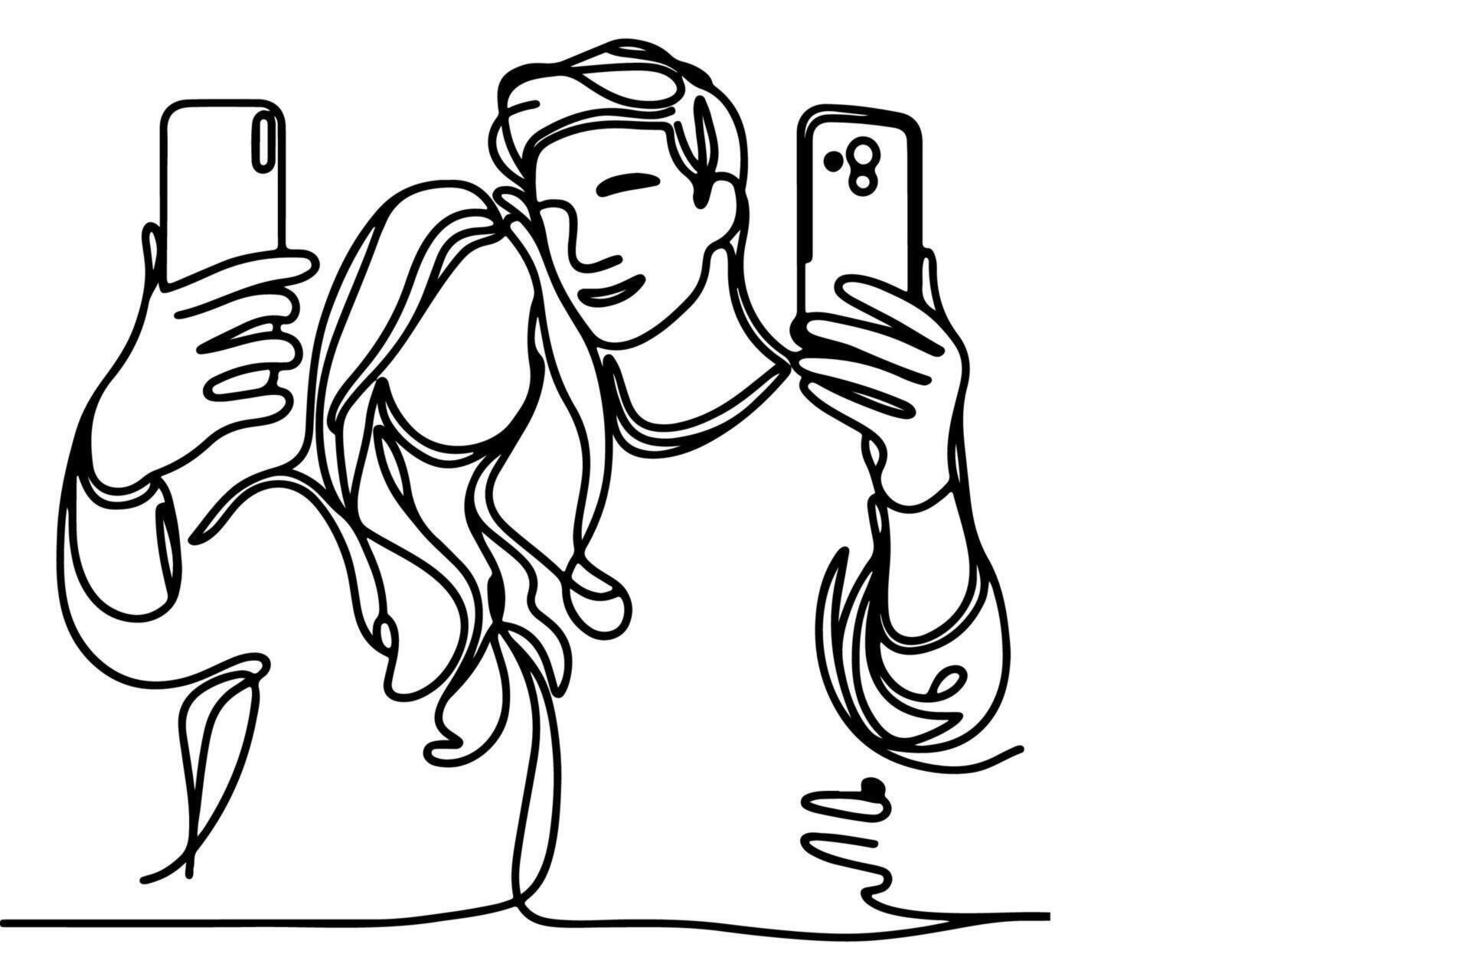 contínuo 1 Preto linha arte desenhando alegre jovem homem e menina segurando Smartphone para levando agindo selfie ou vídeo ligar através Móvel telefone esboço rabisco vetor família viagem conceito